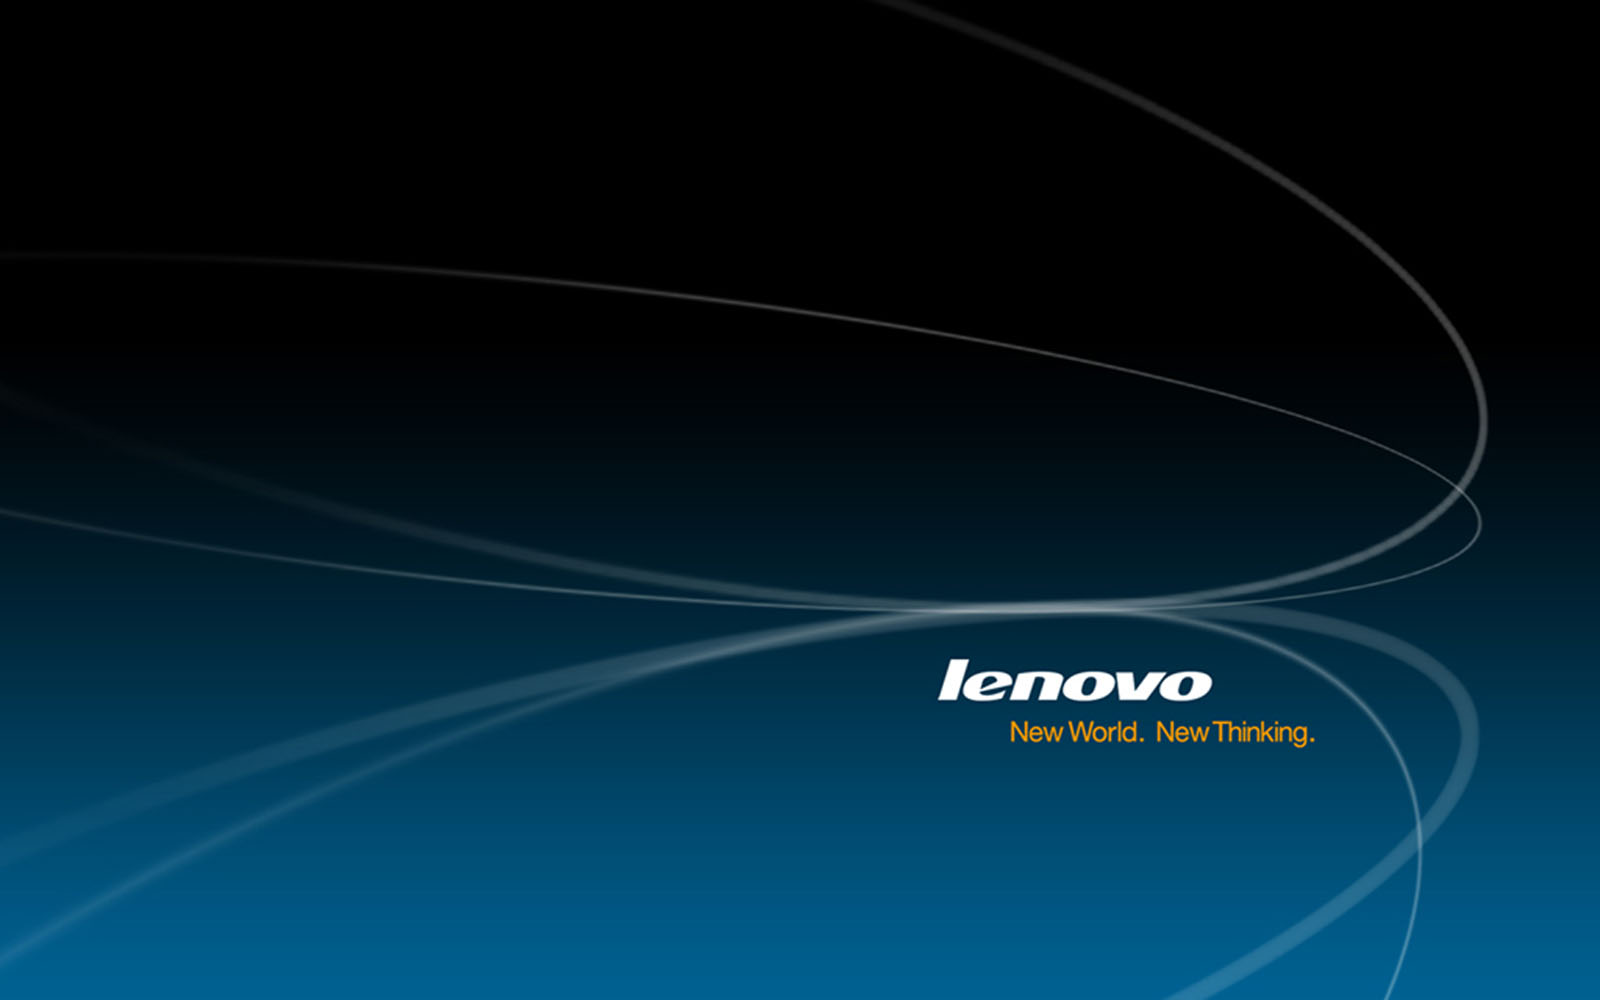 Laptop Wallpaper Lenovo Desktopwallpaper